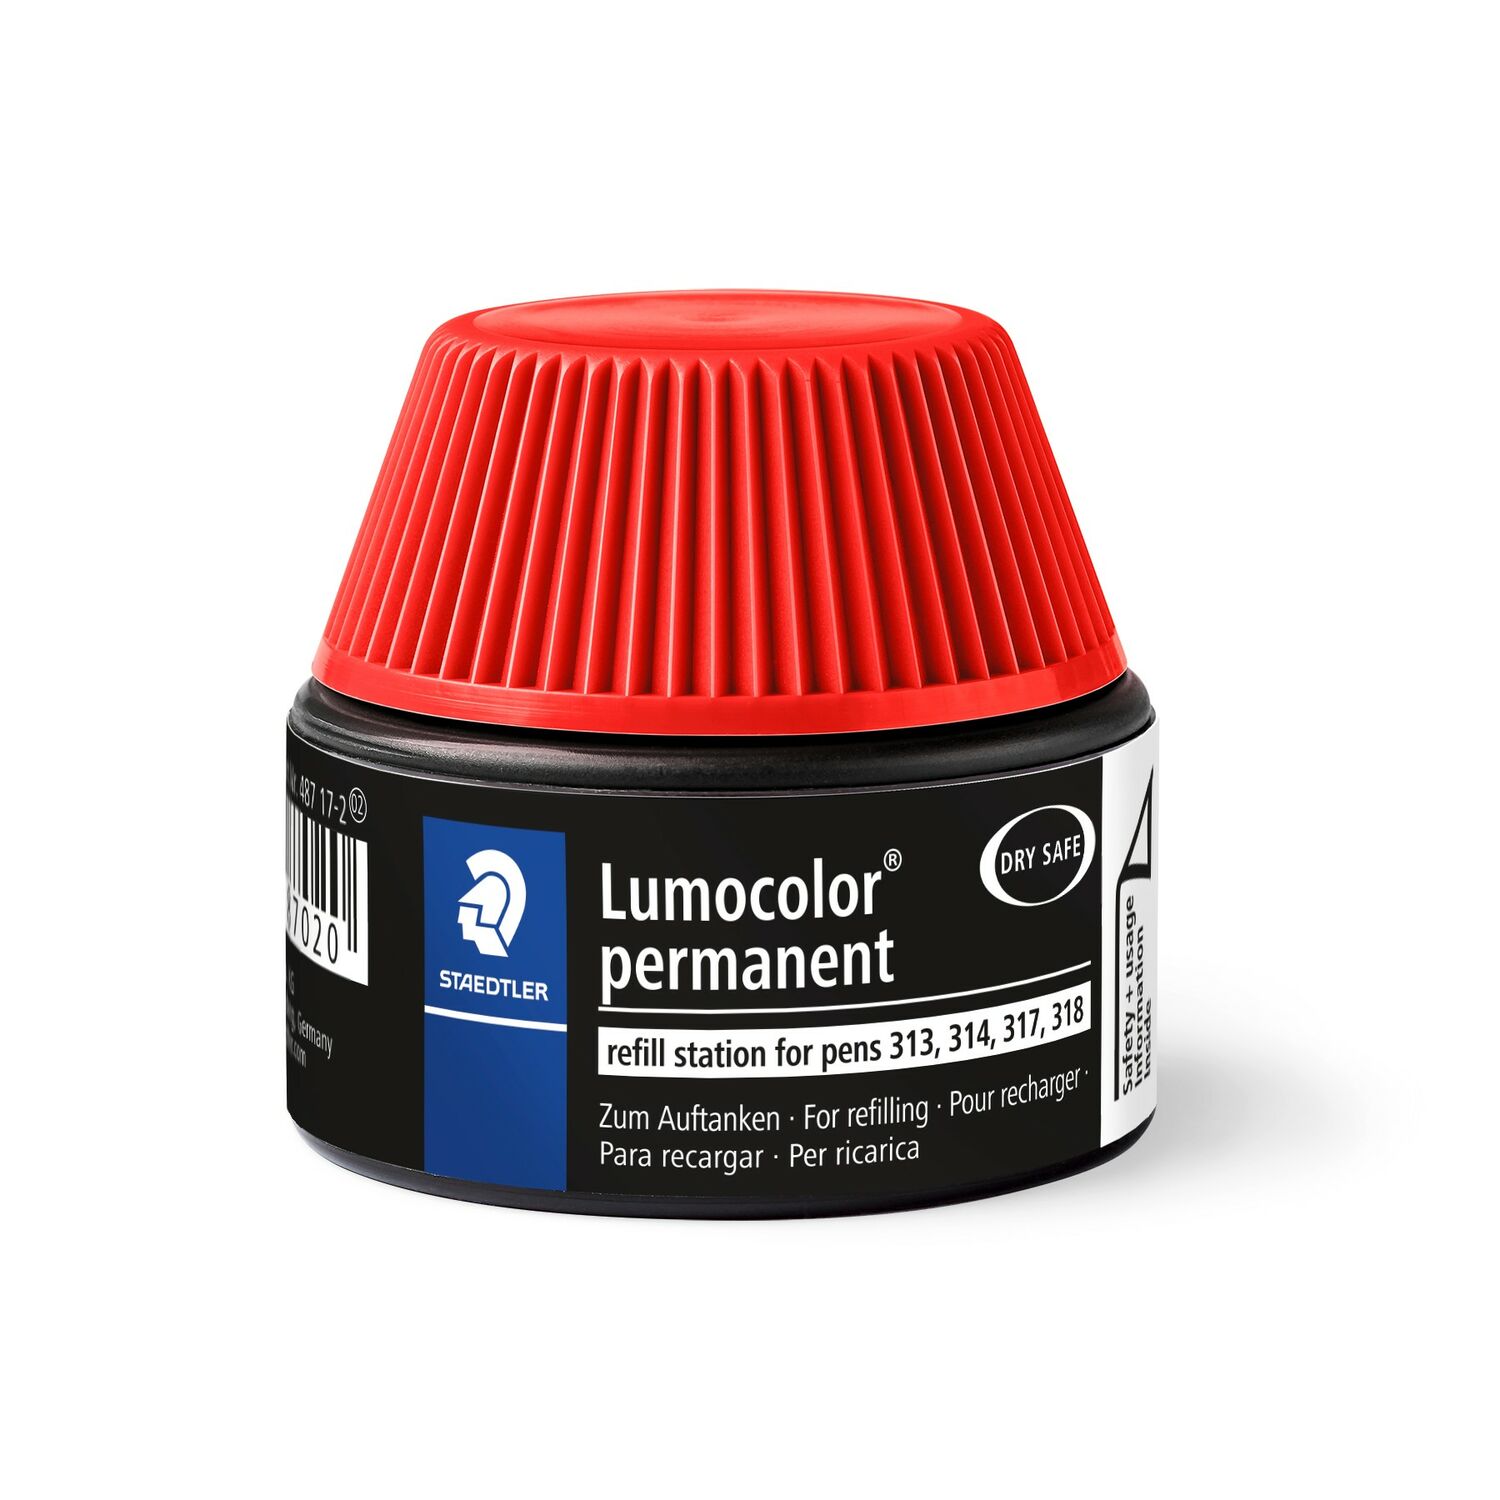 Lumocolor® permanent refill station 487 17 - Cargador para Lumocolor 313, 314, 317, 318